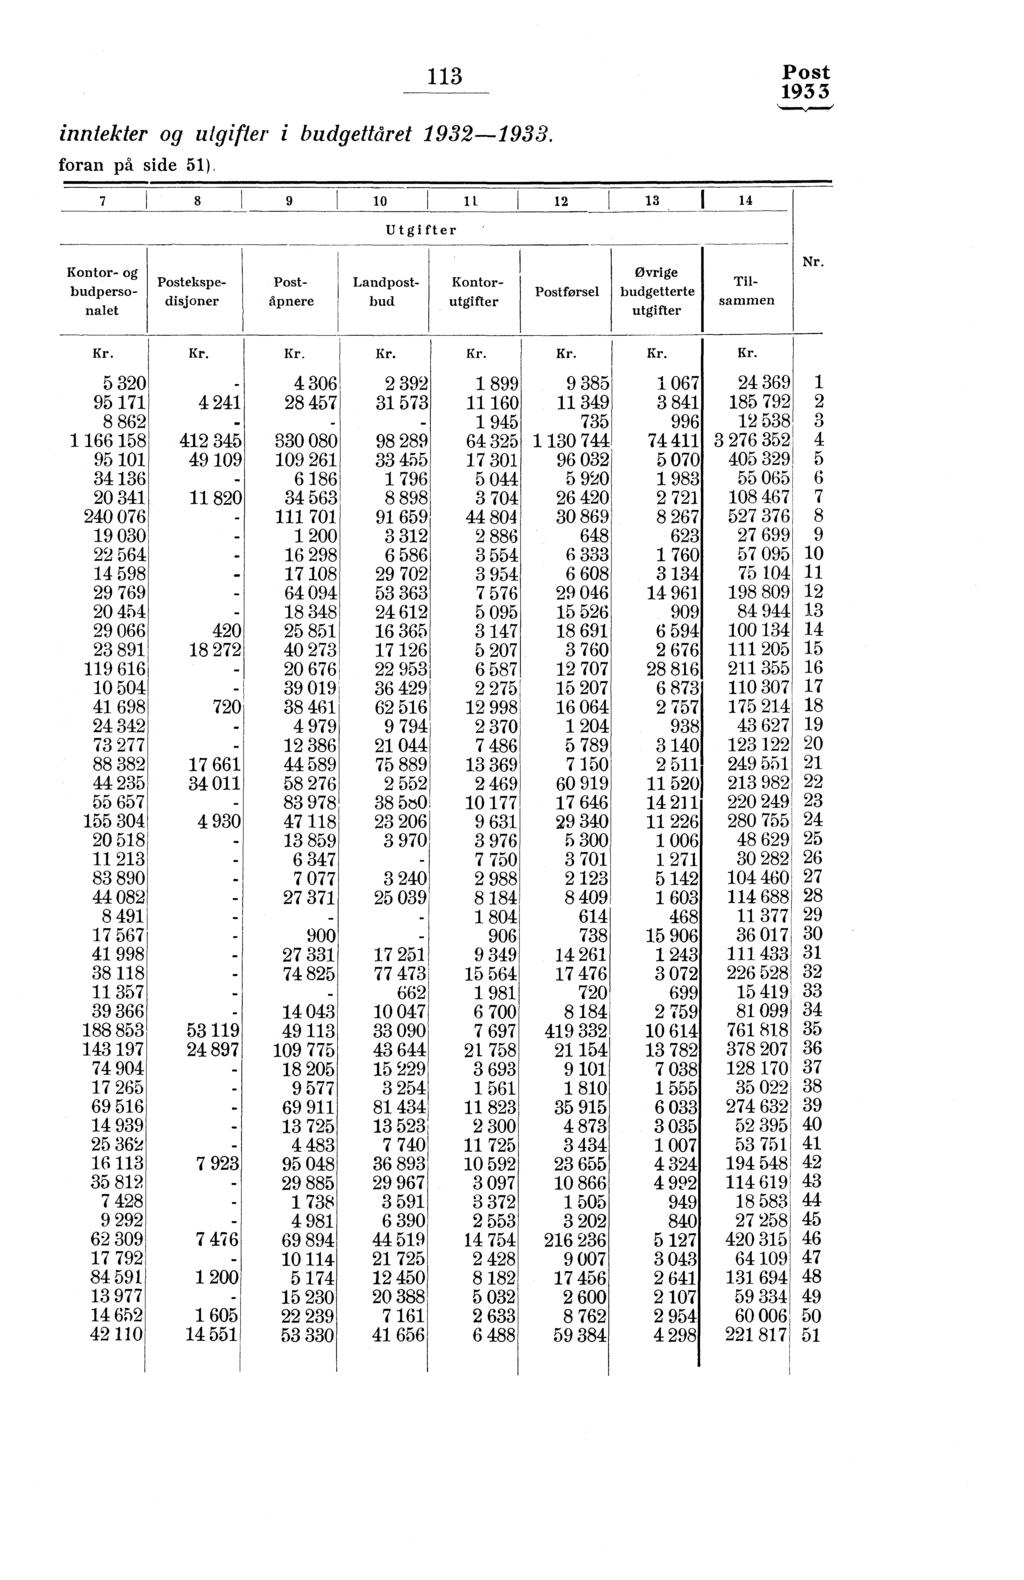 inntekter og utgifter i budgettåret 93-.